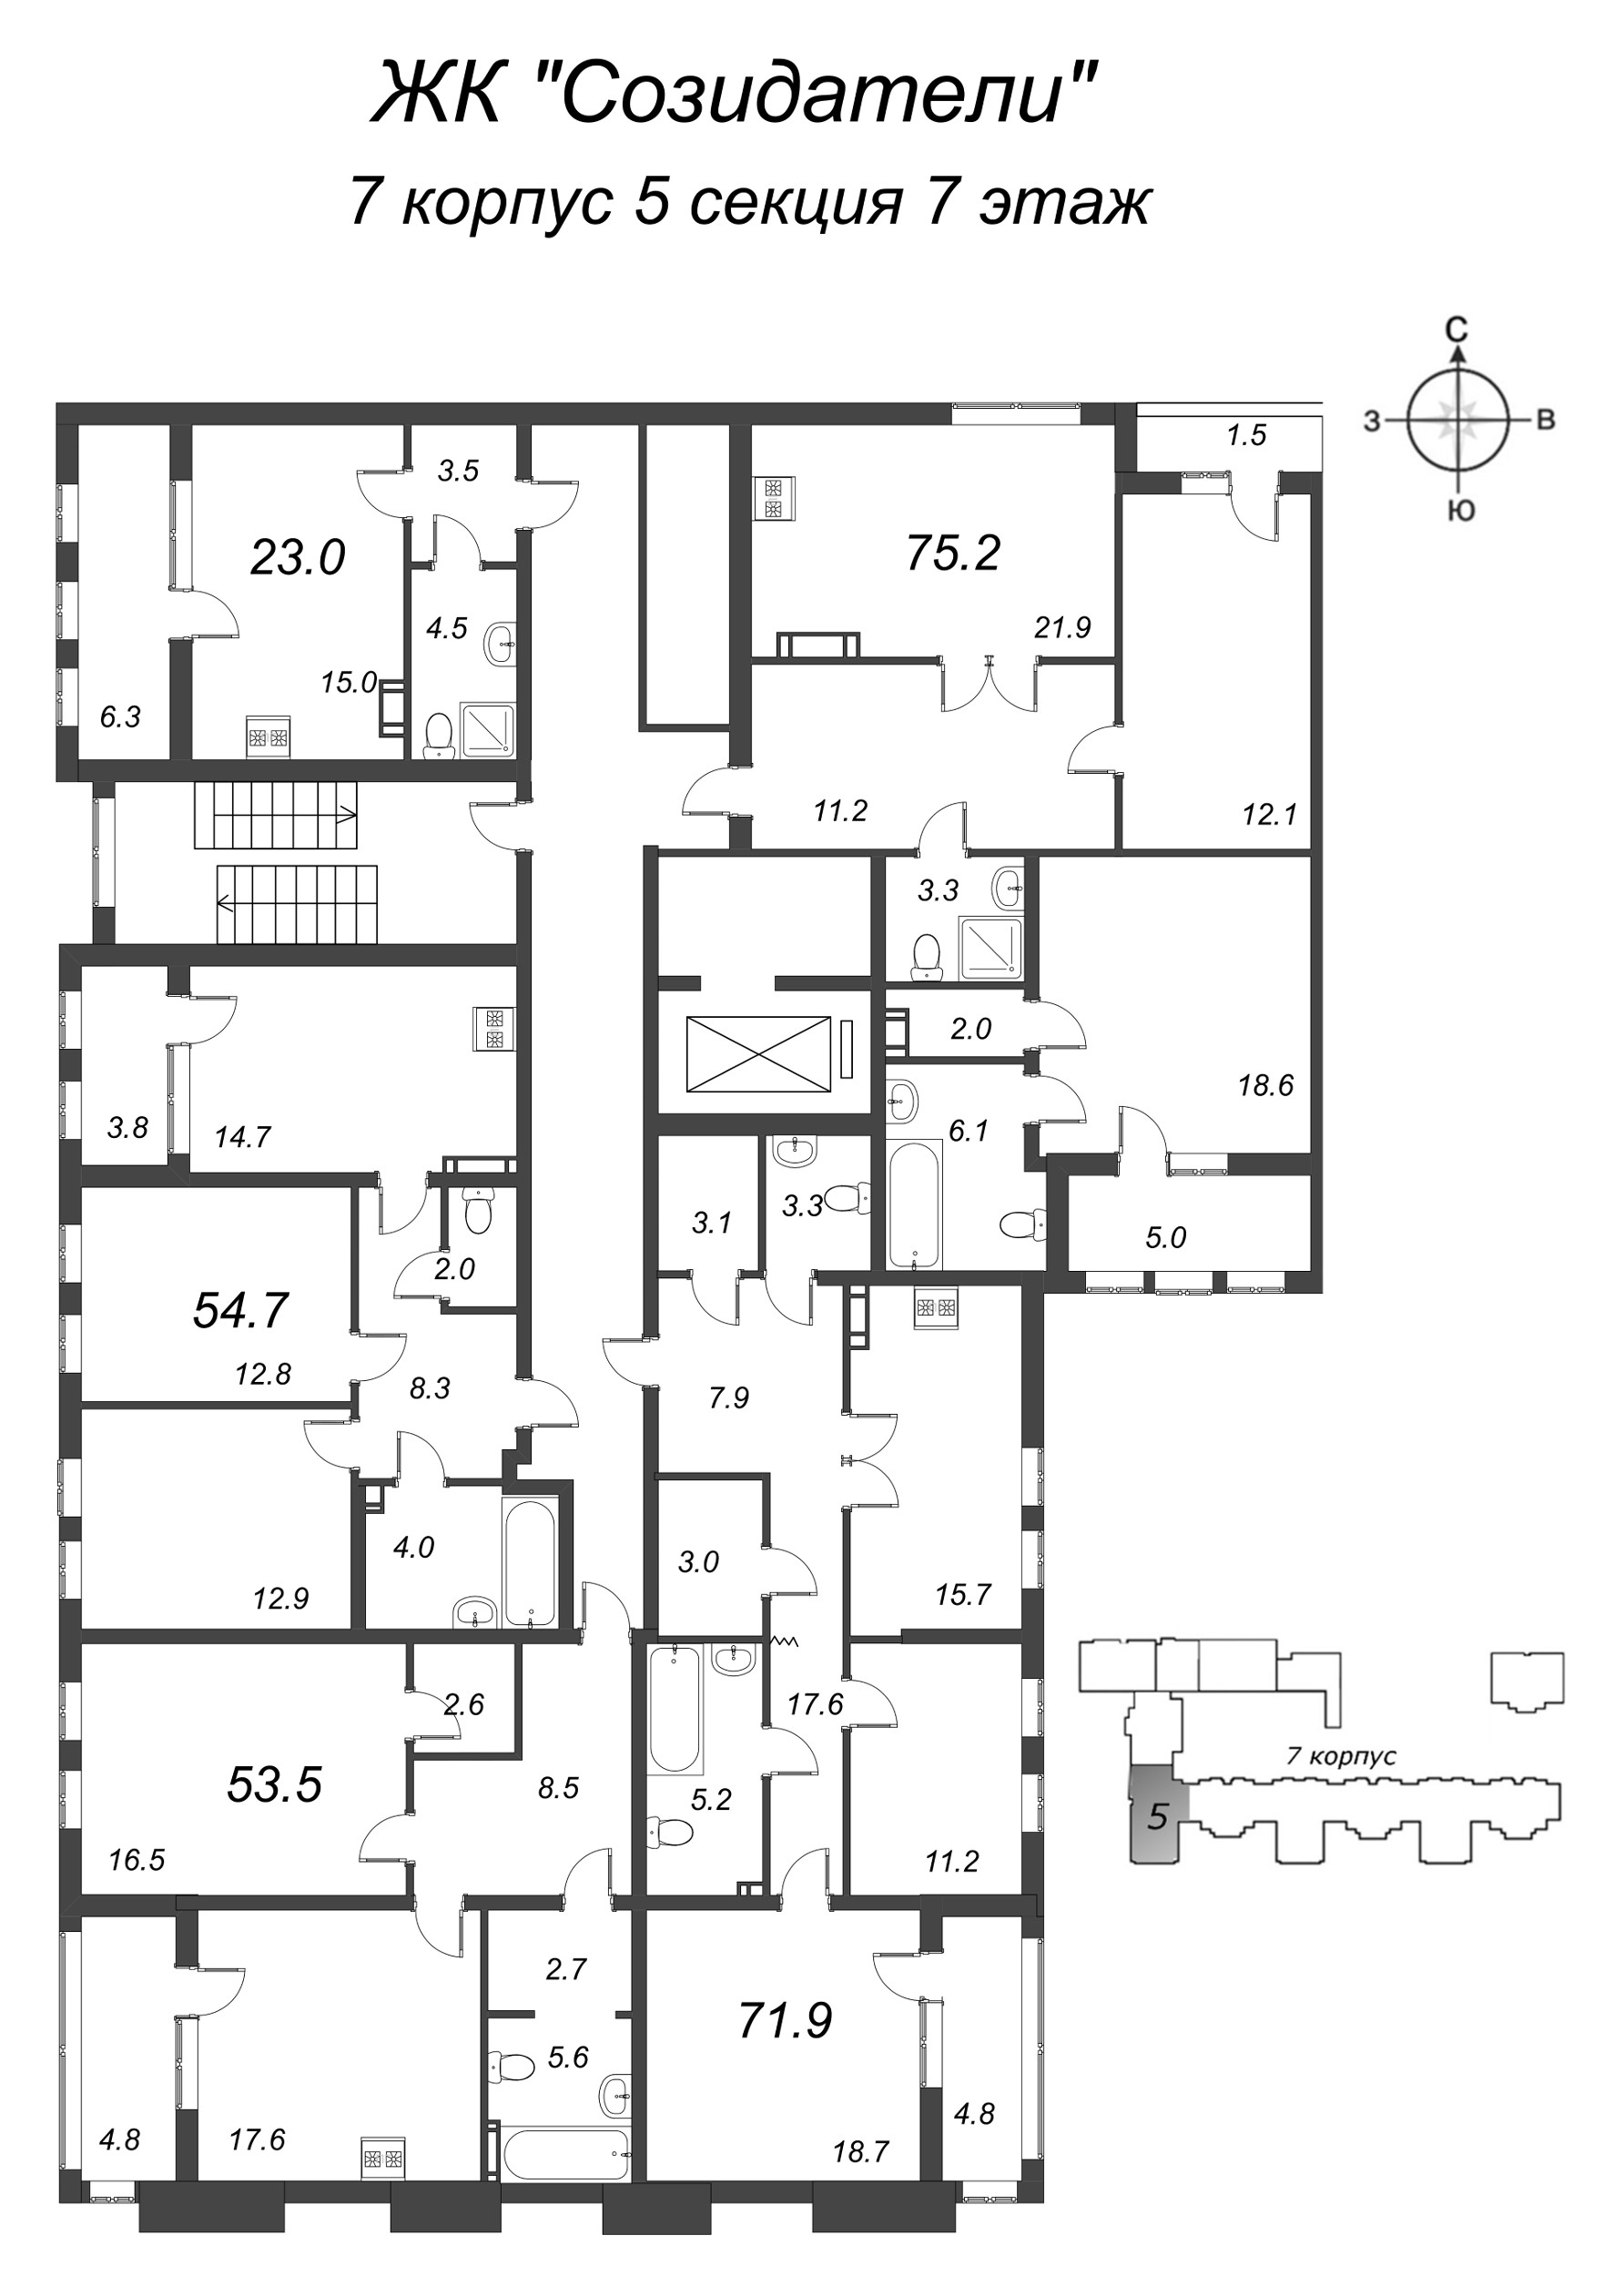 3-комнатная (Евро) квартира, 75 м² в ЖК "Созидатели" - планировка этажа